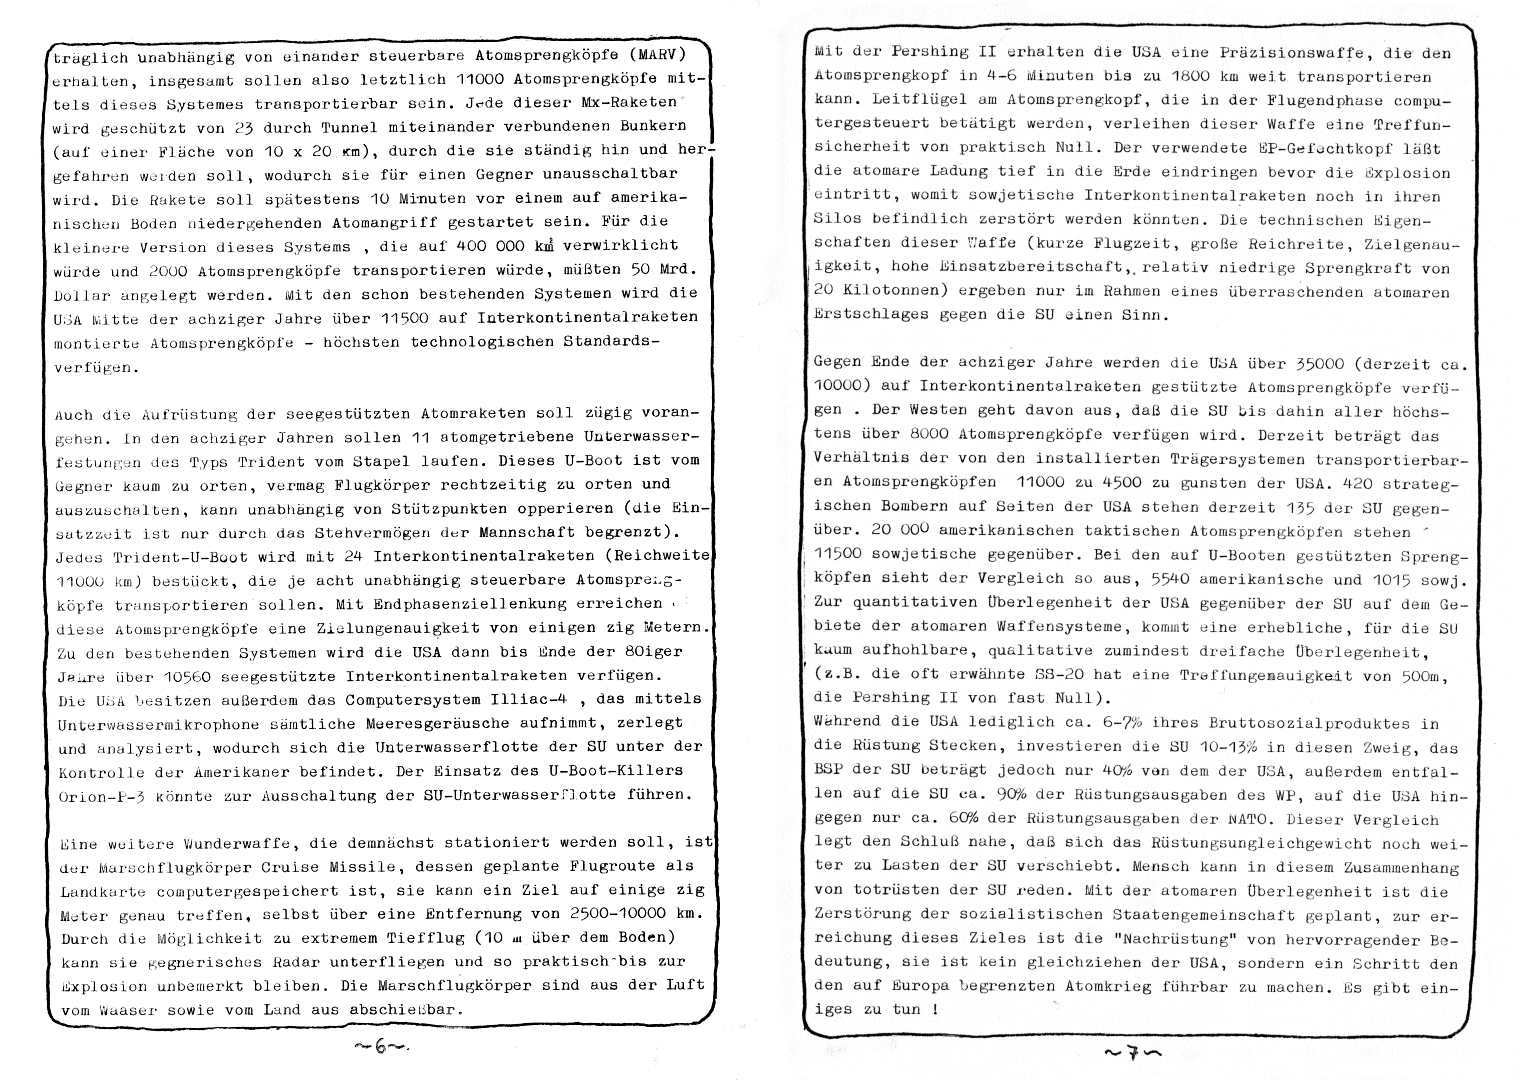 HZ 5 - Seite 6 und 7